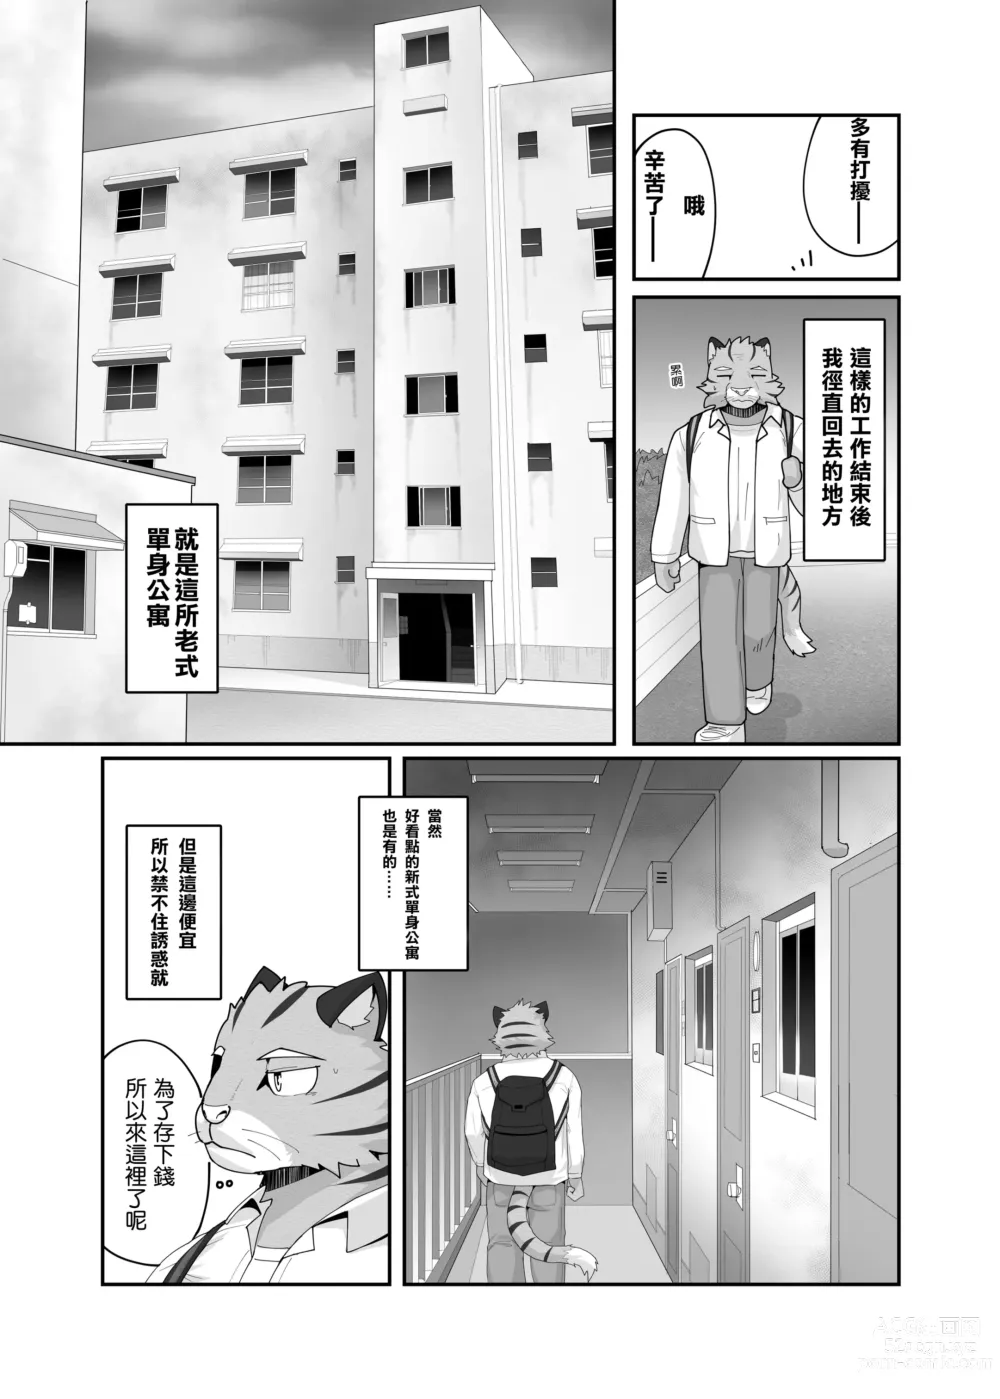 Page 5 of doujinshi 老式單身公寓中有位統御雄性們的主